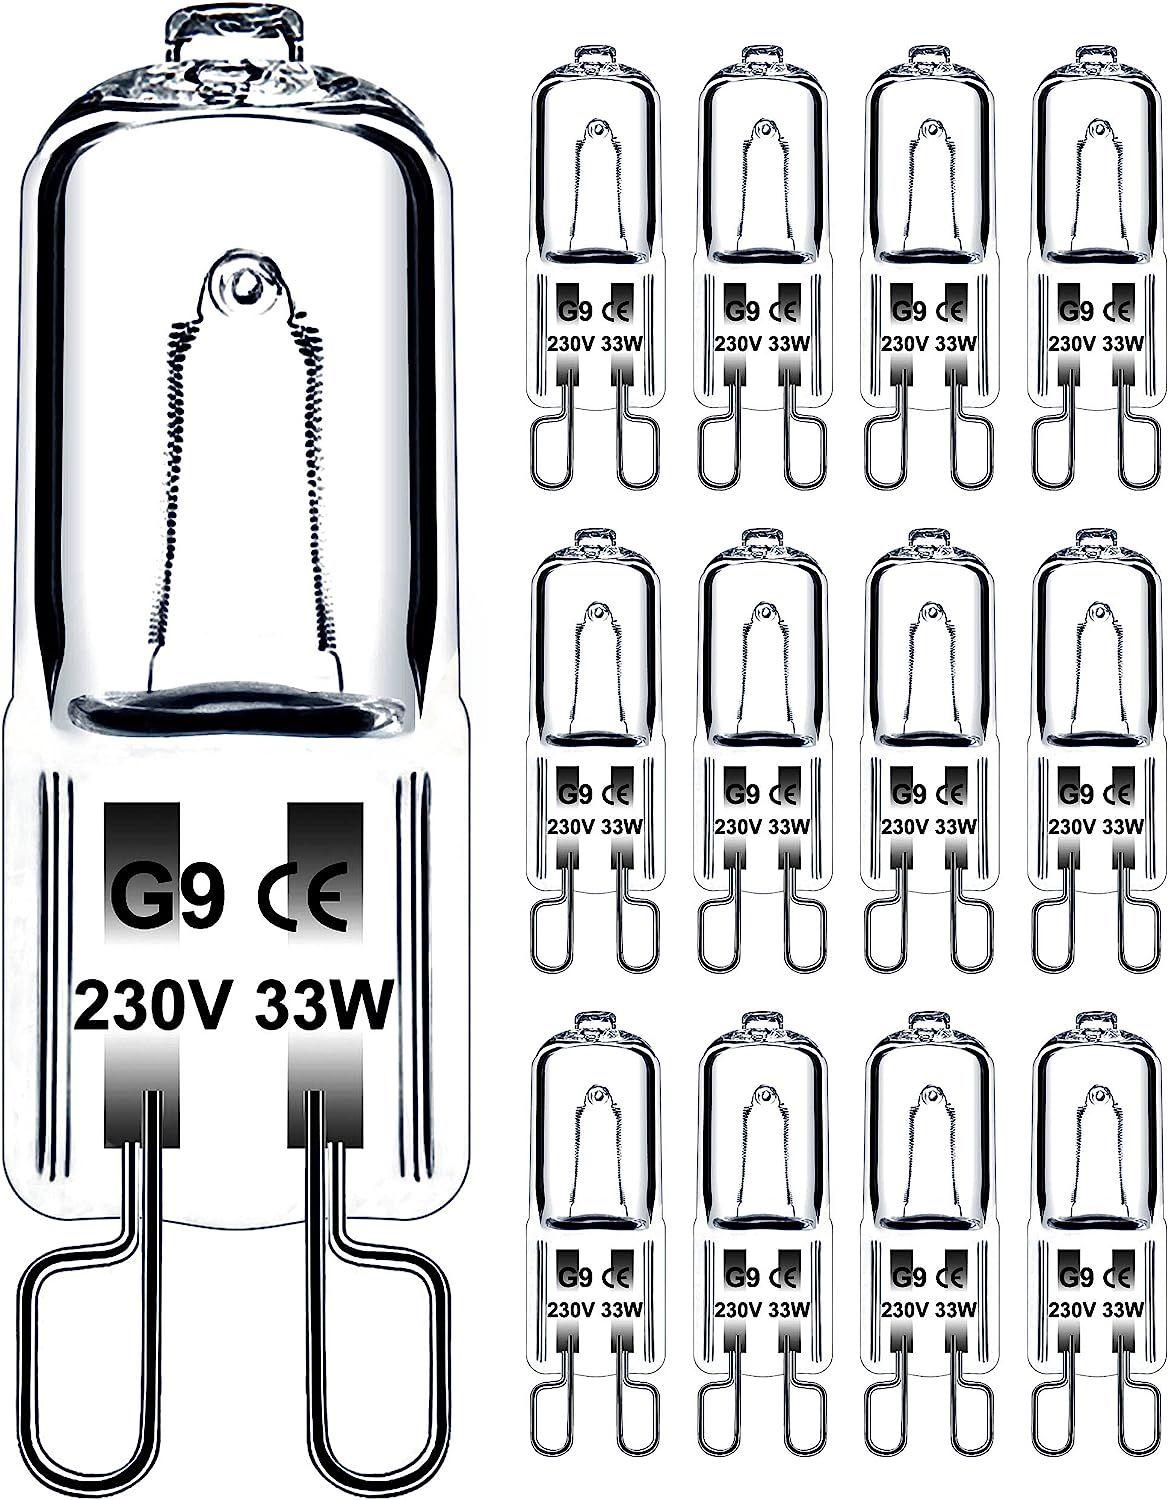 Jaenmsa Ampoule G9 33W 230V Dimmable Blanc Chaud Ampoule Halogène G9  Tolérance de 300°C Ampoule Four G9 Pour Four Micro-ondes Cuisinière  Plafonniers Lot de 12-33W-12P-33W-12P